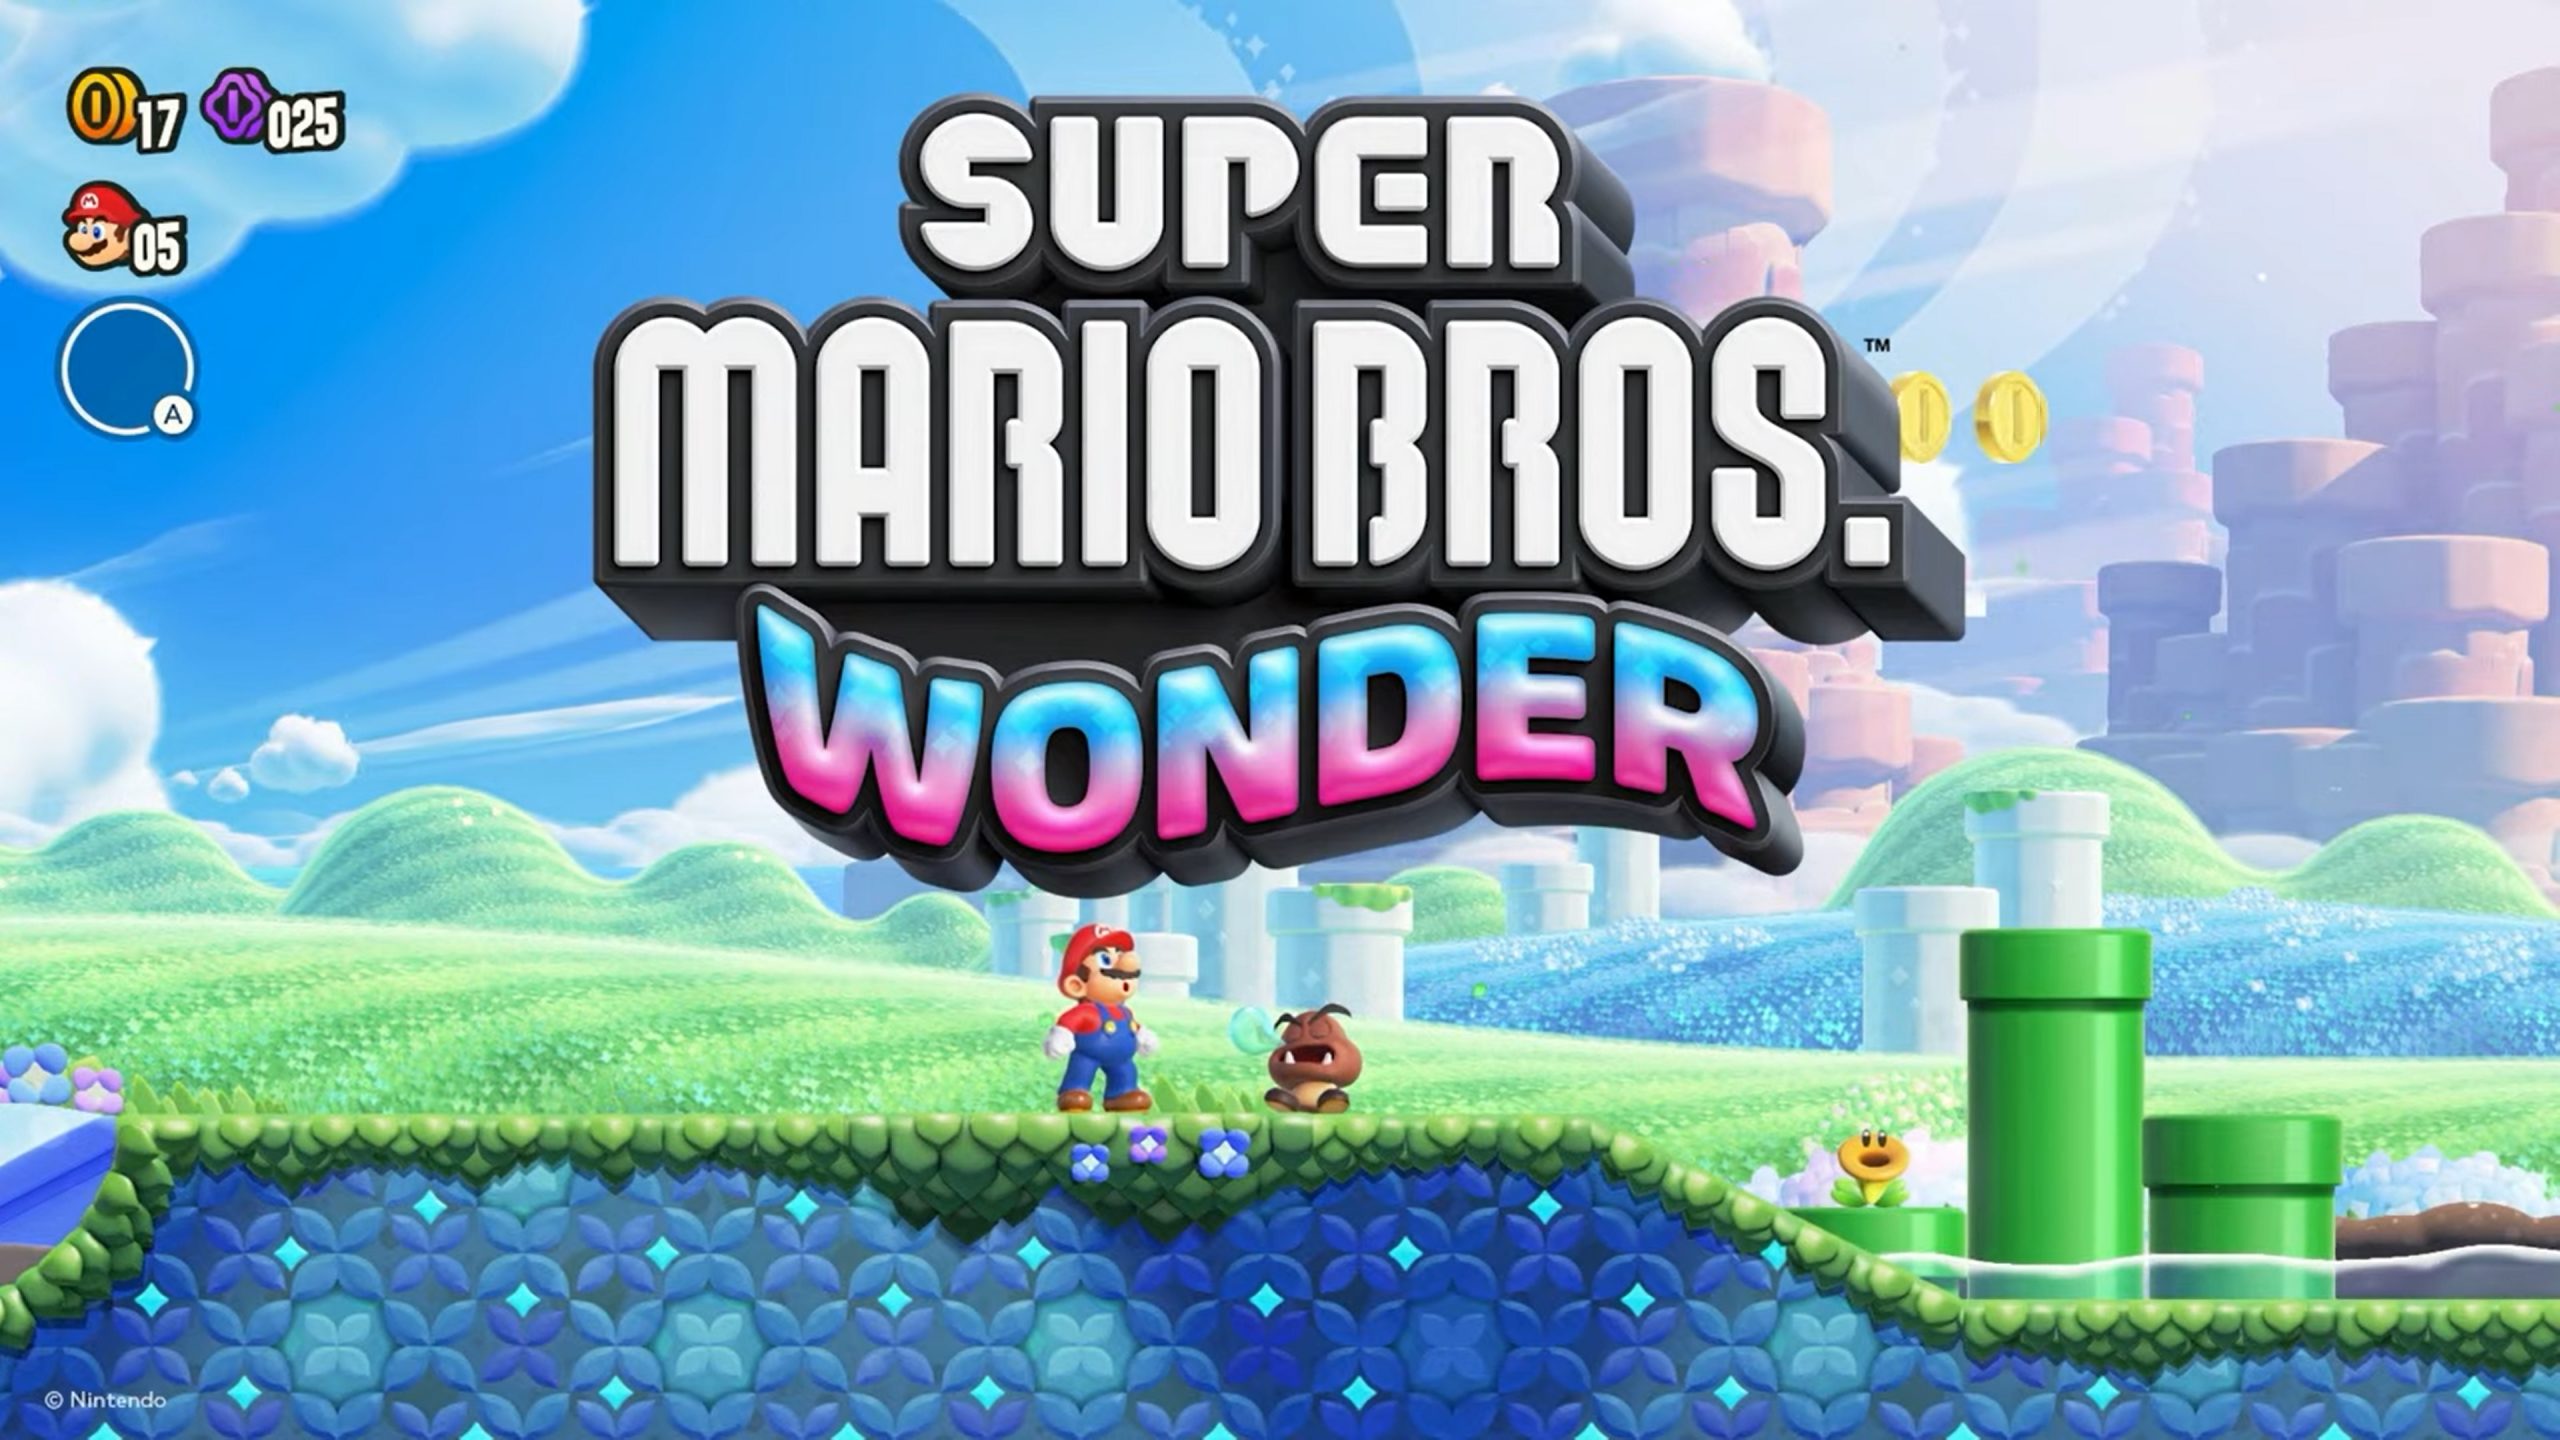 Liczba fizycznych kopii Super Mario Bros. Wonder sprzedanych w Japonii wyniosła ponad 638 tysięcy. Gra zajęła pierwsze miejsce na listach przebojów